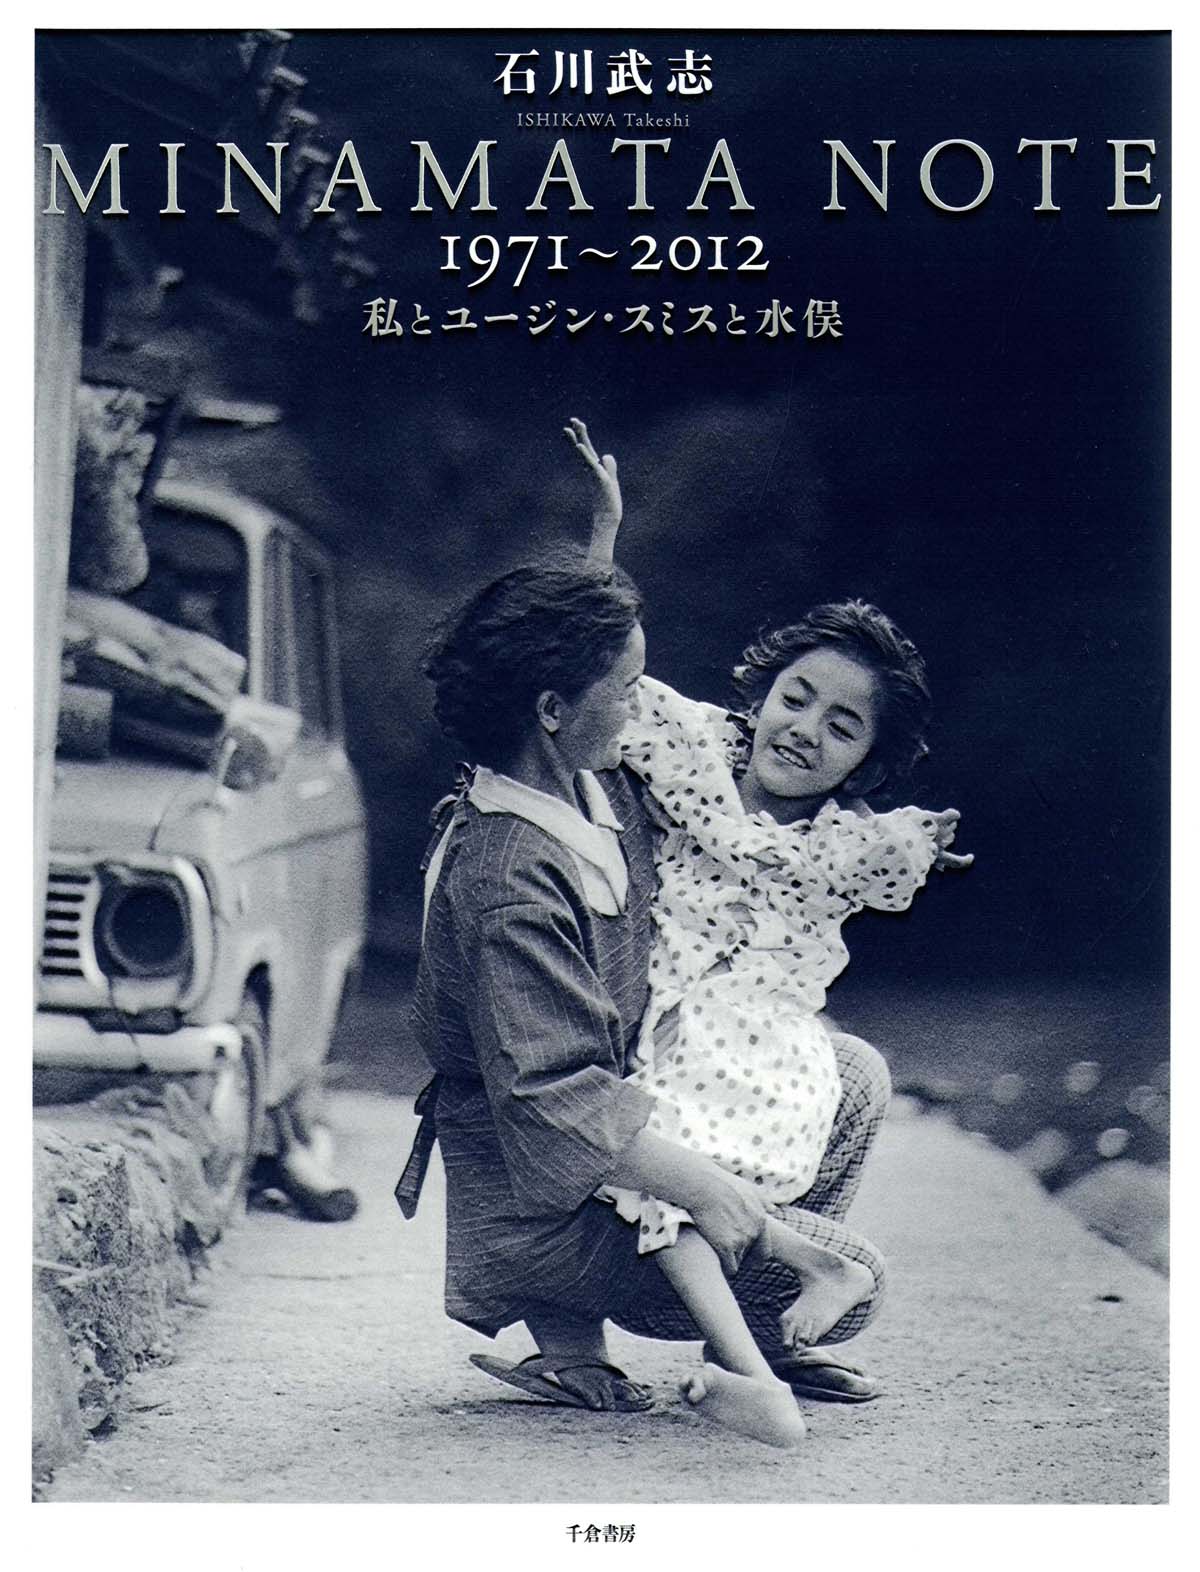 Minamata Note 1971-2012の商品画像